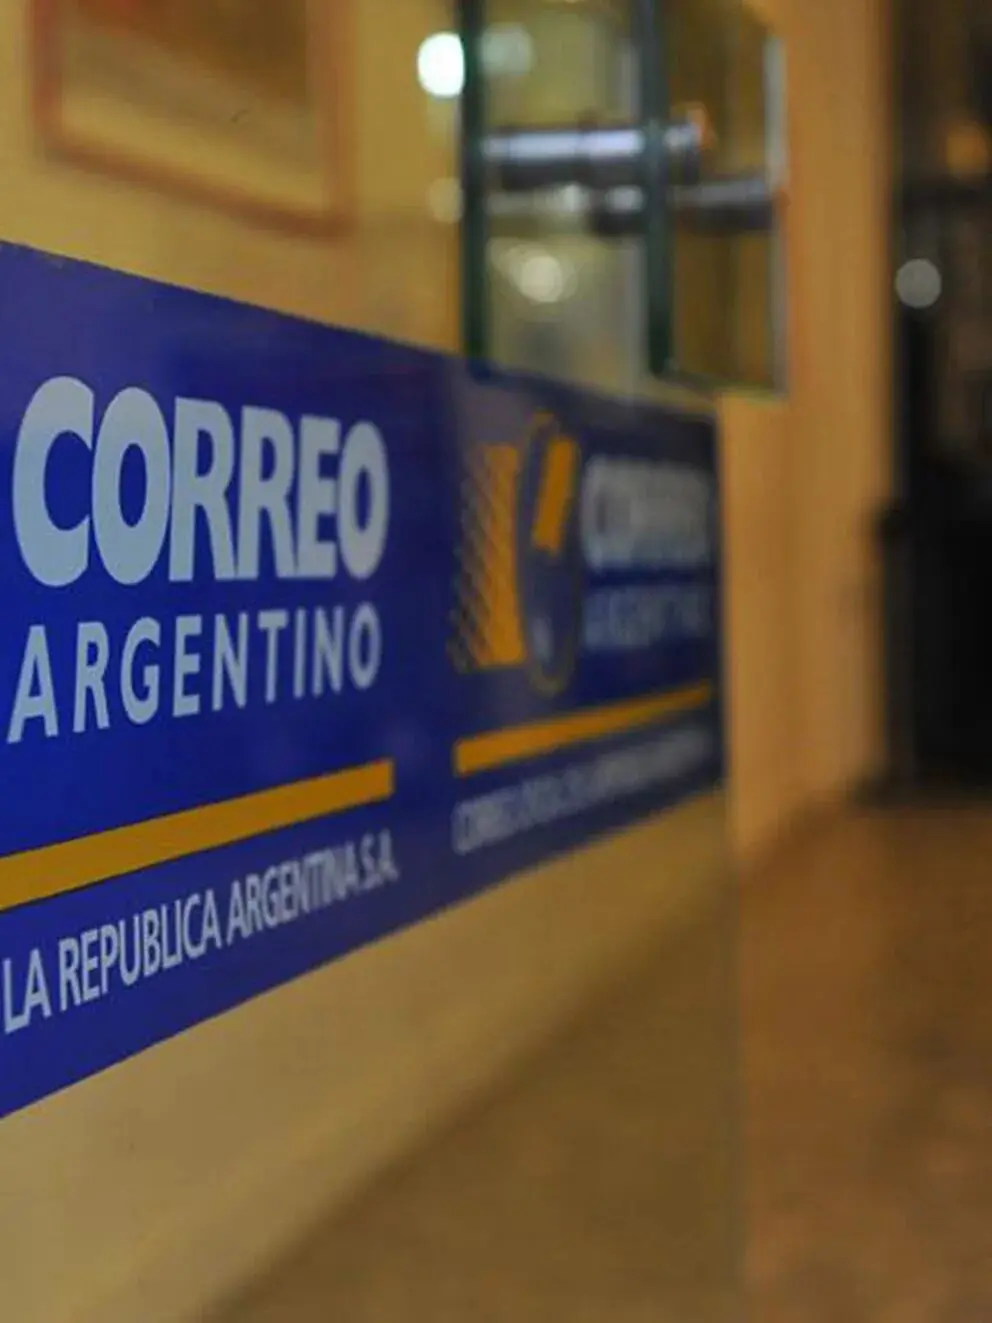 auditoria correo argentino post concursal - Cuándo se privatizó el Correo Argentino